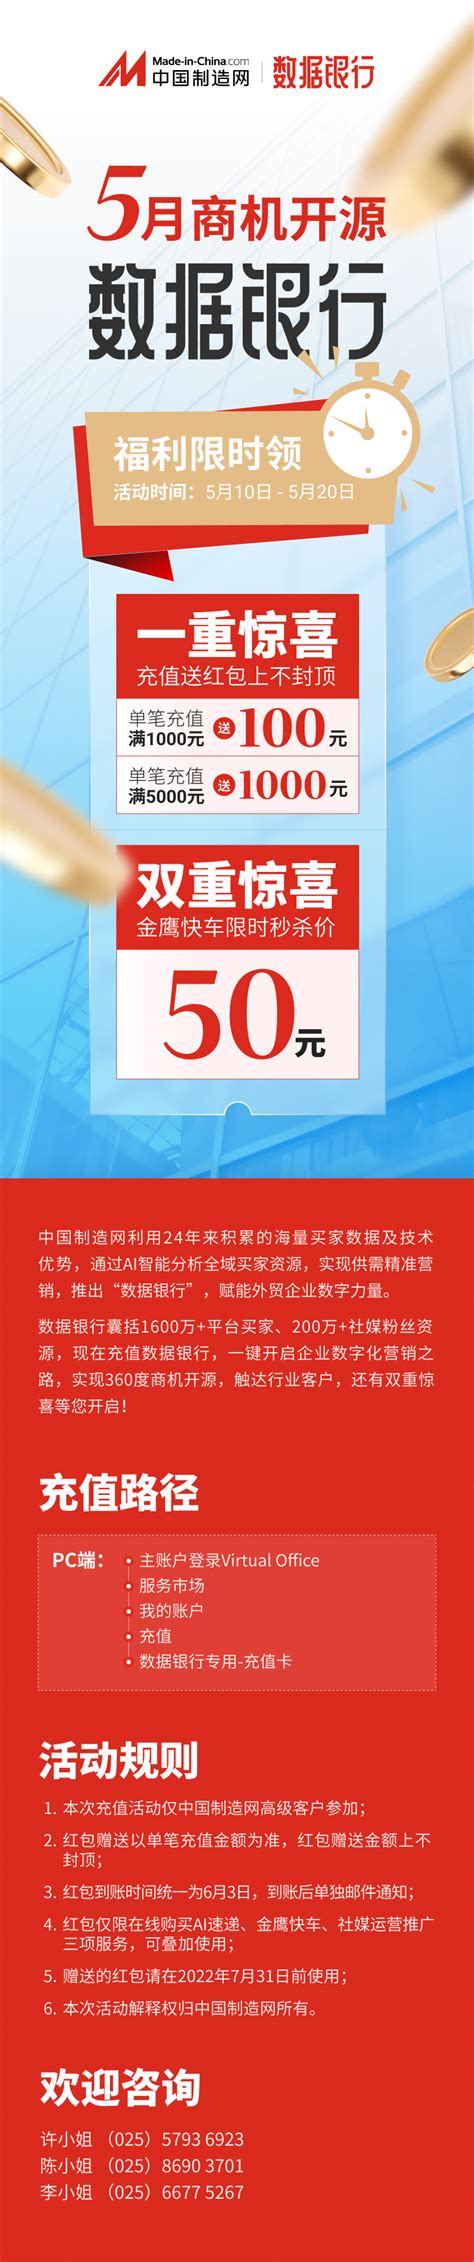 5月商机开源 数据银行福利限时领！ - 中国制造网会员电子商务业务支持平台